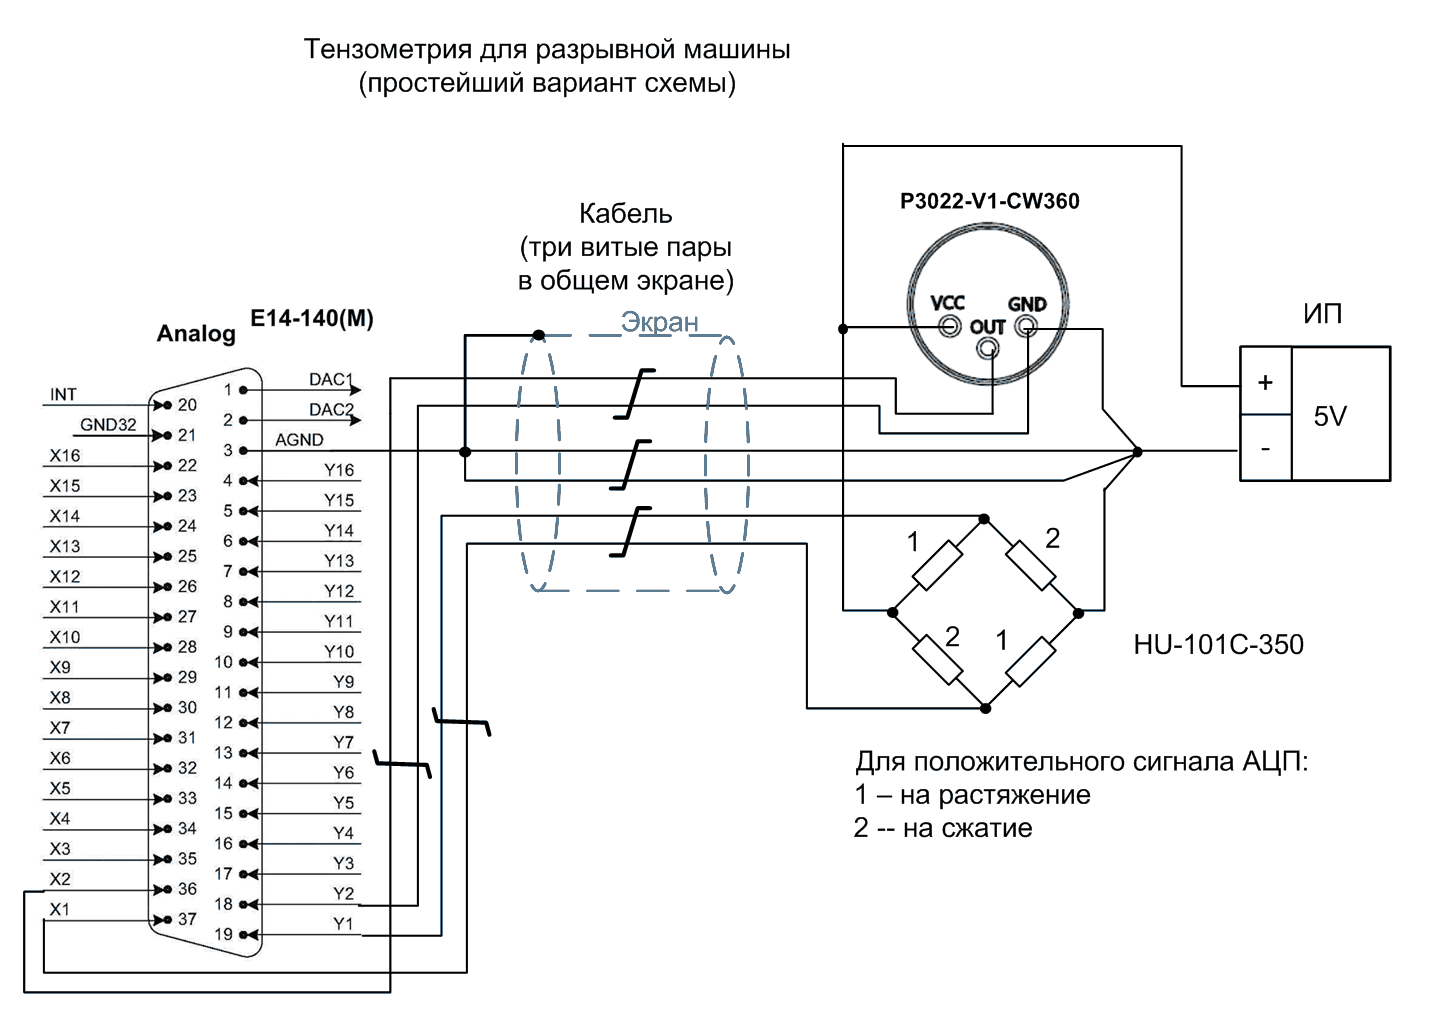  Простая тензометрическая схема для разрывной машины с применением E14-140-M совместно с тензодатчиками высокой чувствительности